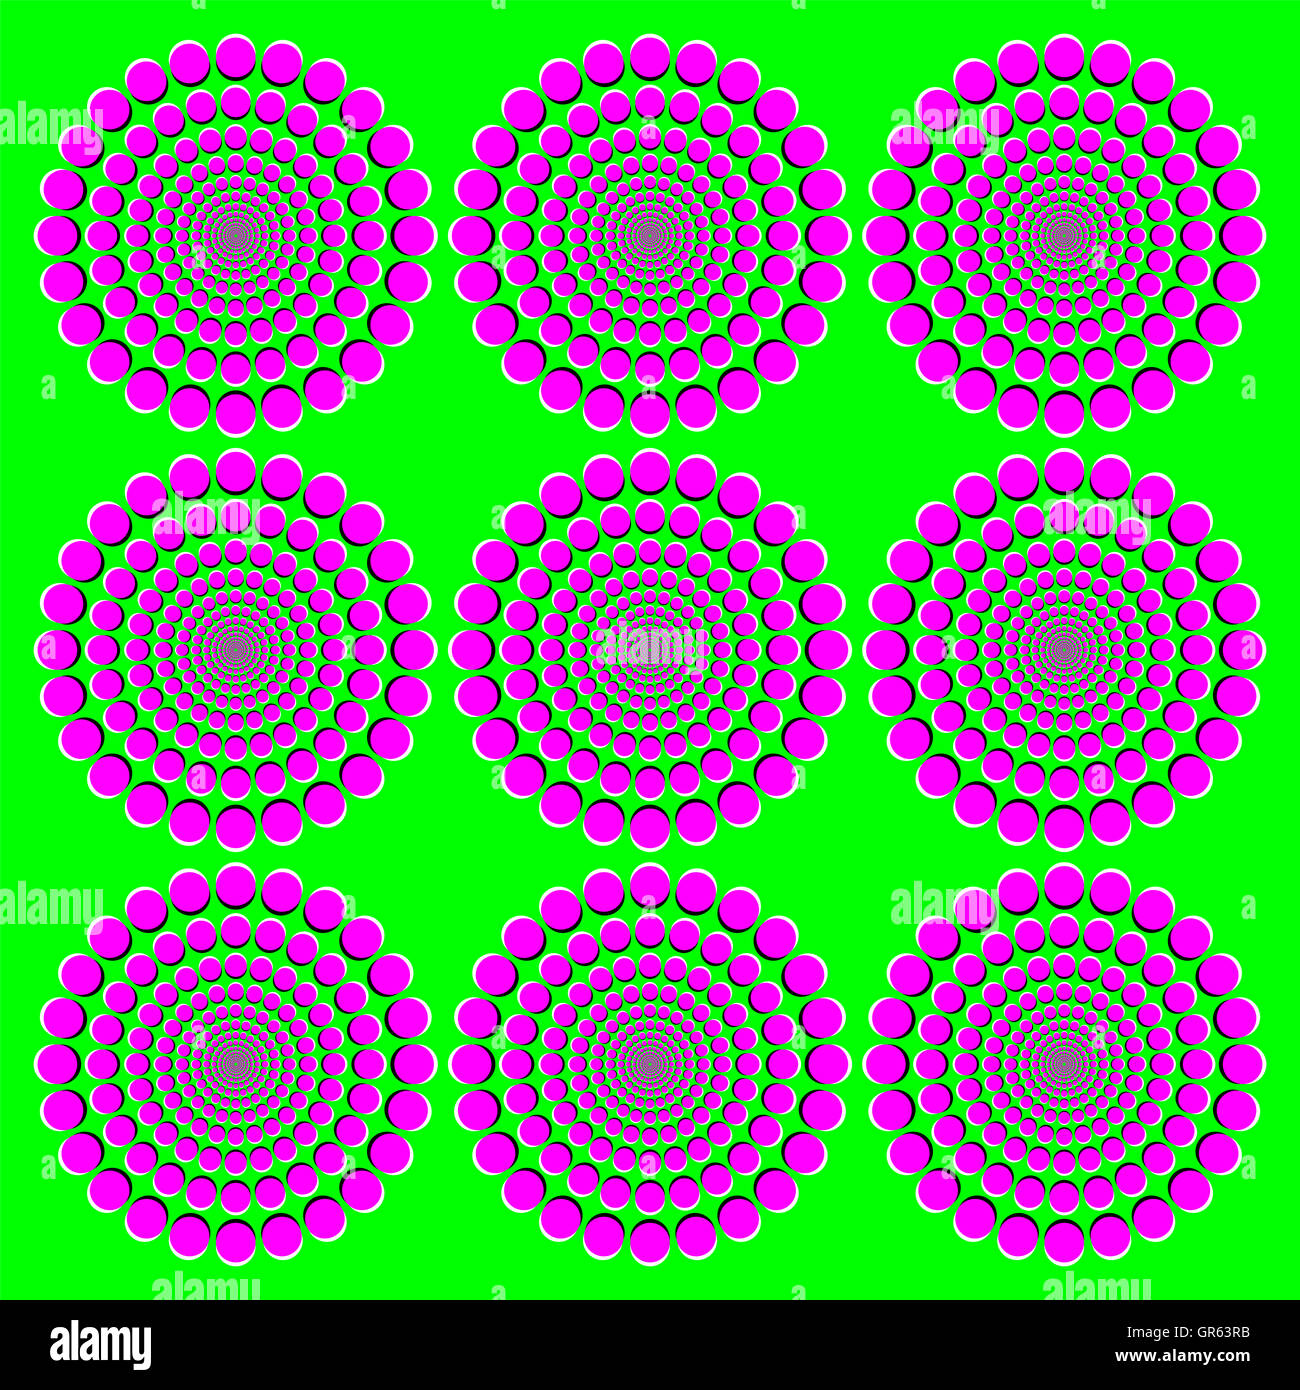 Blühende rosa Räder Bewegung Illusion. Es scheint, dass die Räder mit Magenta Punkte auf grünem Hintergrund größer geworden, beim Bewegen der Augen. Stockfoto